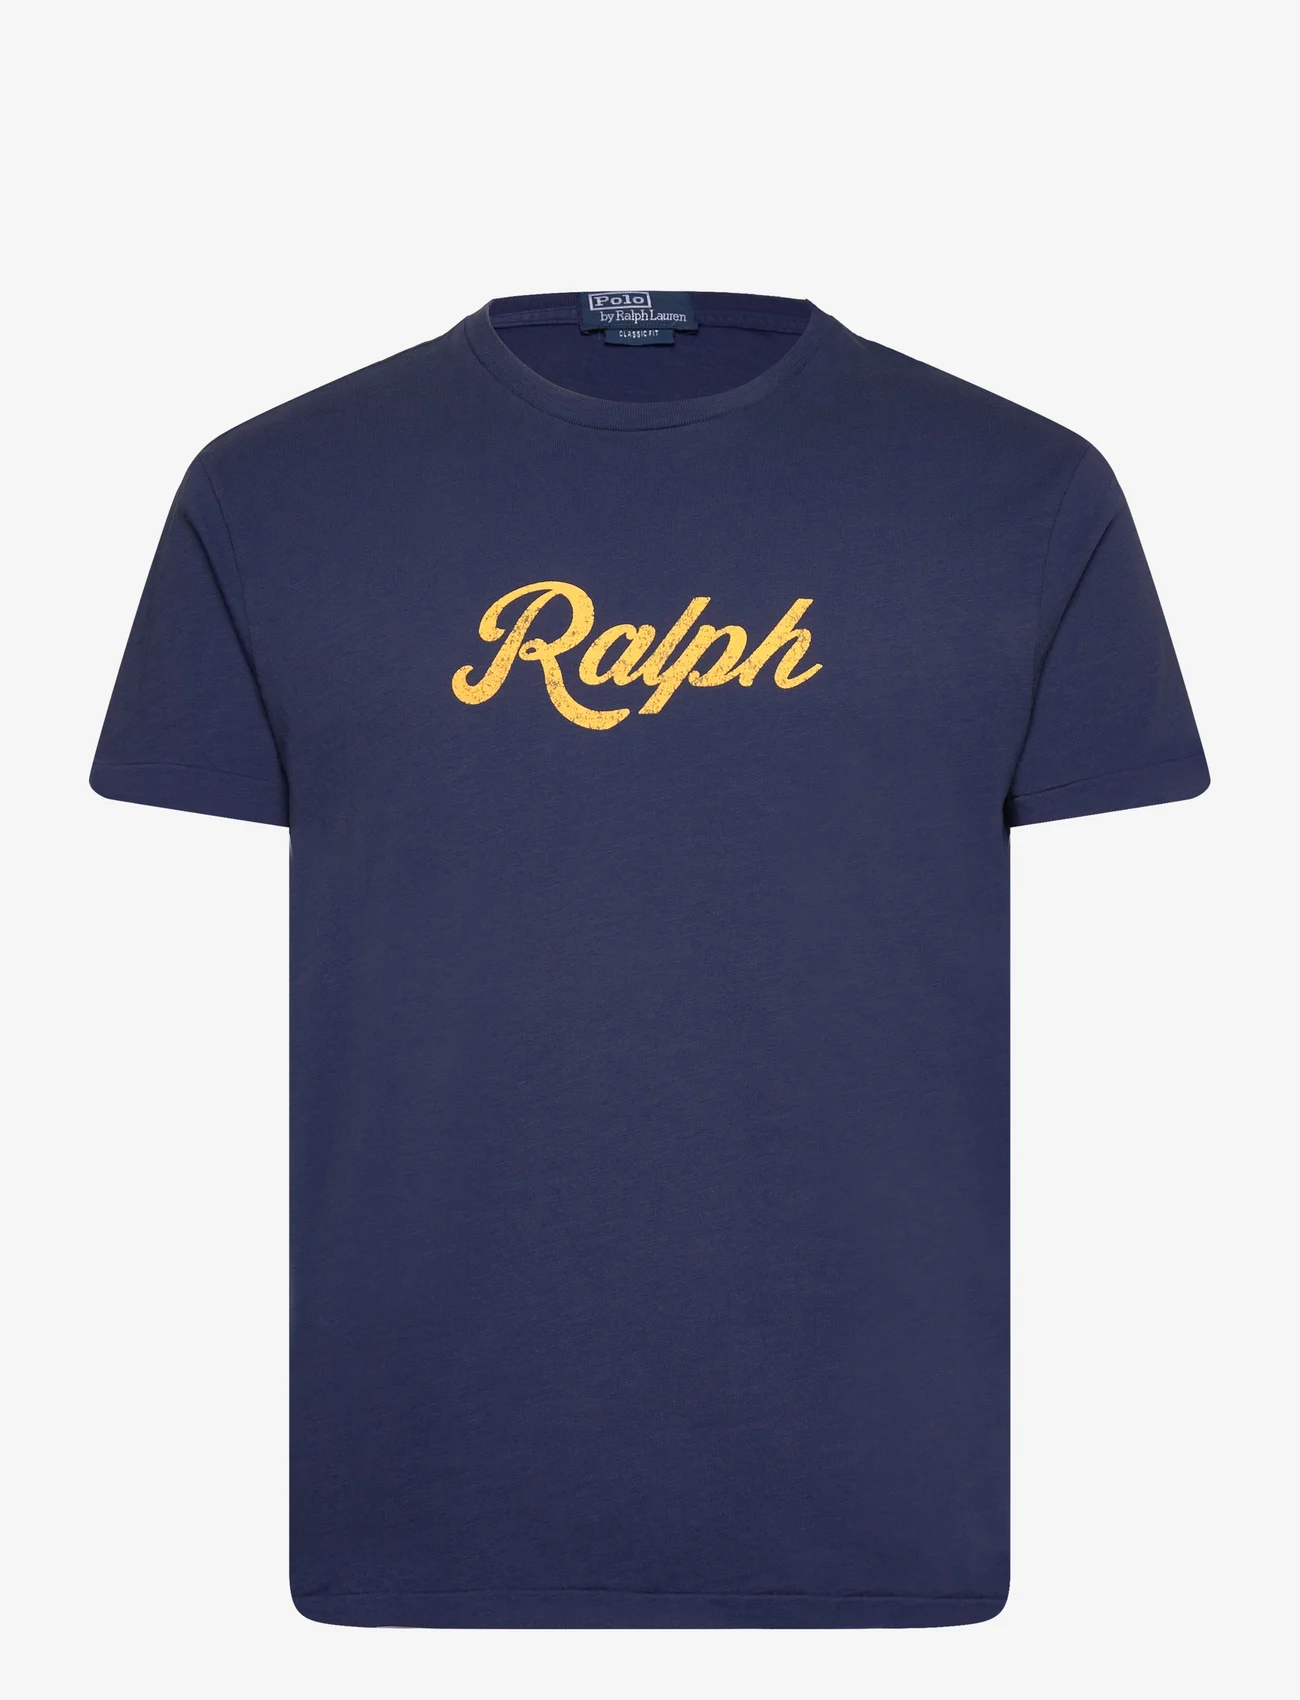 Polo Ralph Lauren - The Ralph T-Shirt - kurzärmelig - dark cobalt - 0